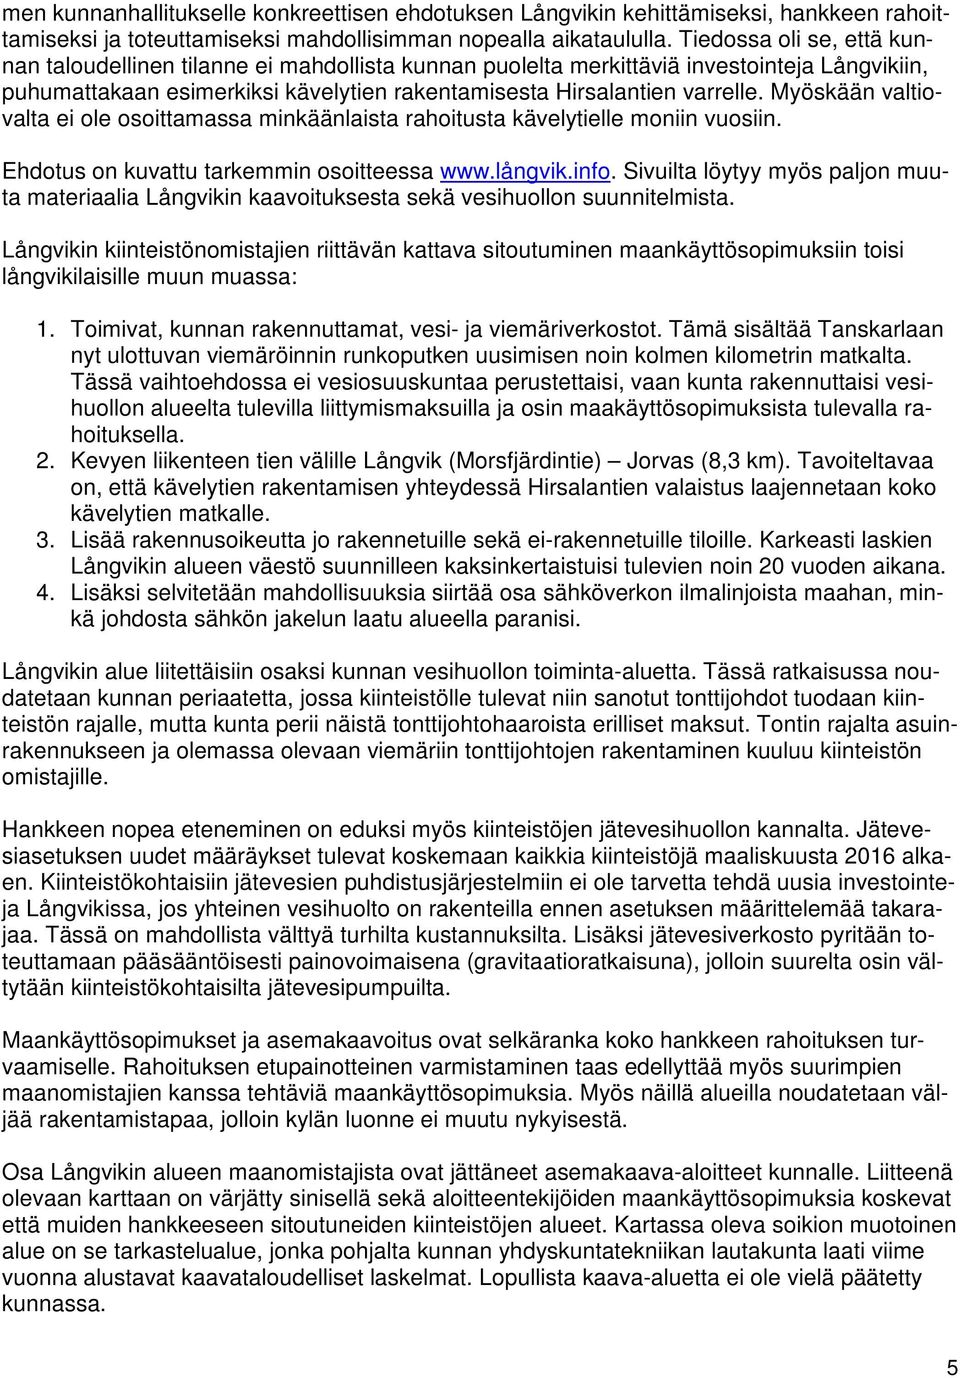 Myöskään valtiovalta ei ole osoittamassa minkäänlaista rahoitusta kävelytielle moniin vuosiin. Ehdotus on kuvattu tarkemmin osoitteessa www.långvik.info.